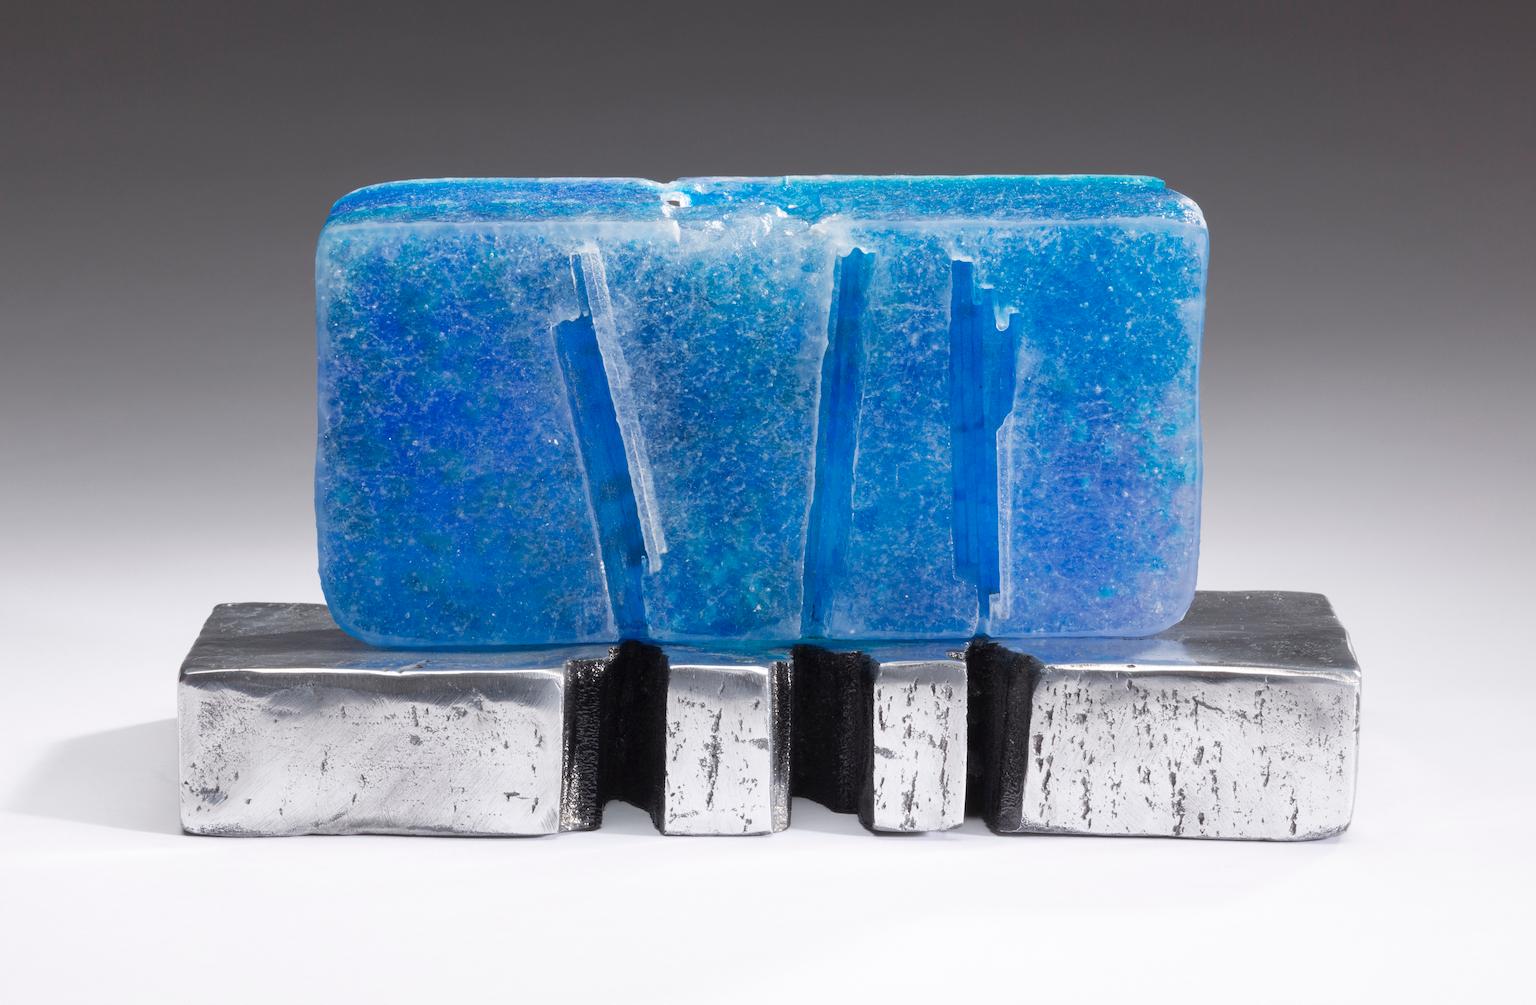  Tischplatte aus blauem Glas-Skulptur, silberfarbener Sockel, von J. Baker, D. Marshall  (Abstrakt), Mixed Media Art, von David Marshall